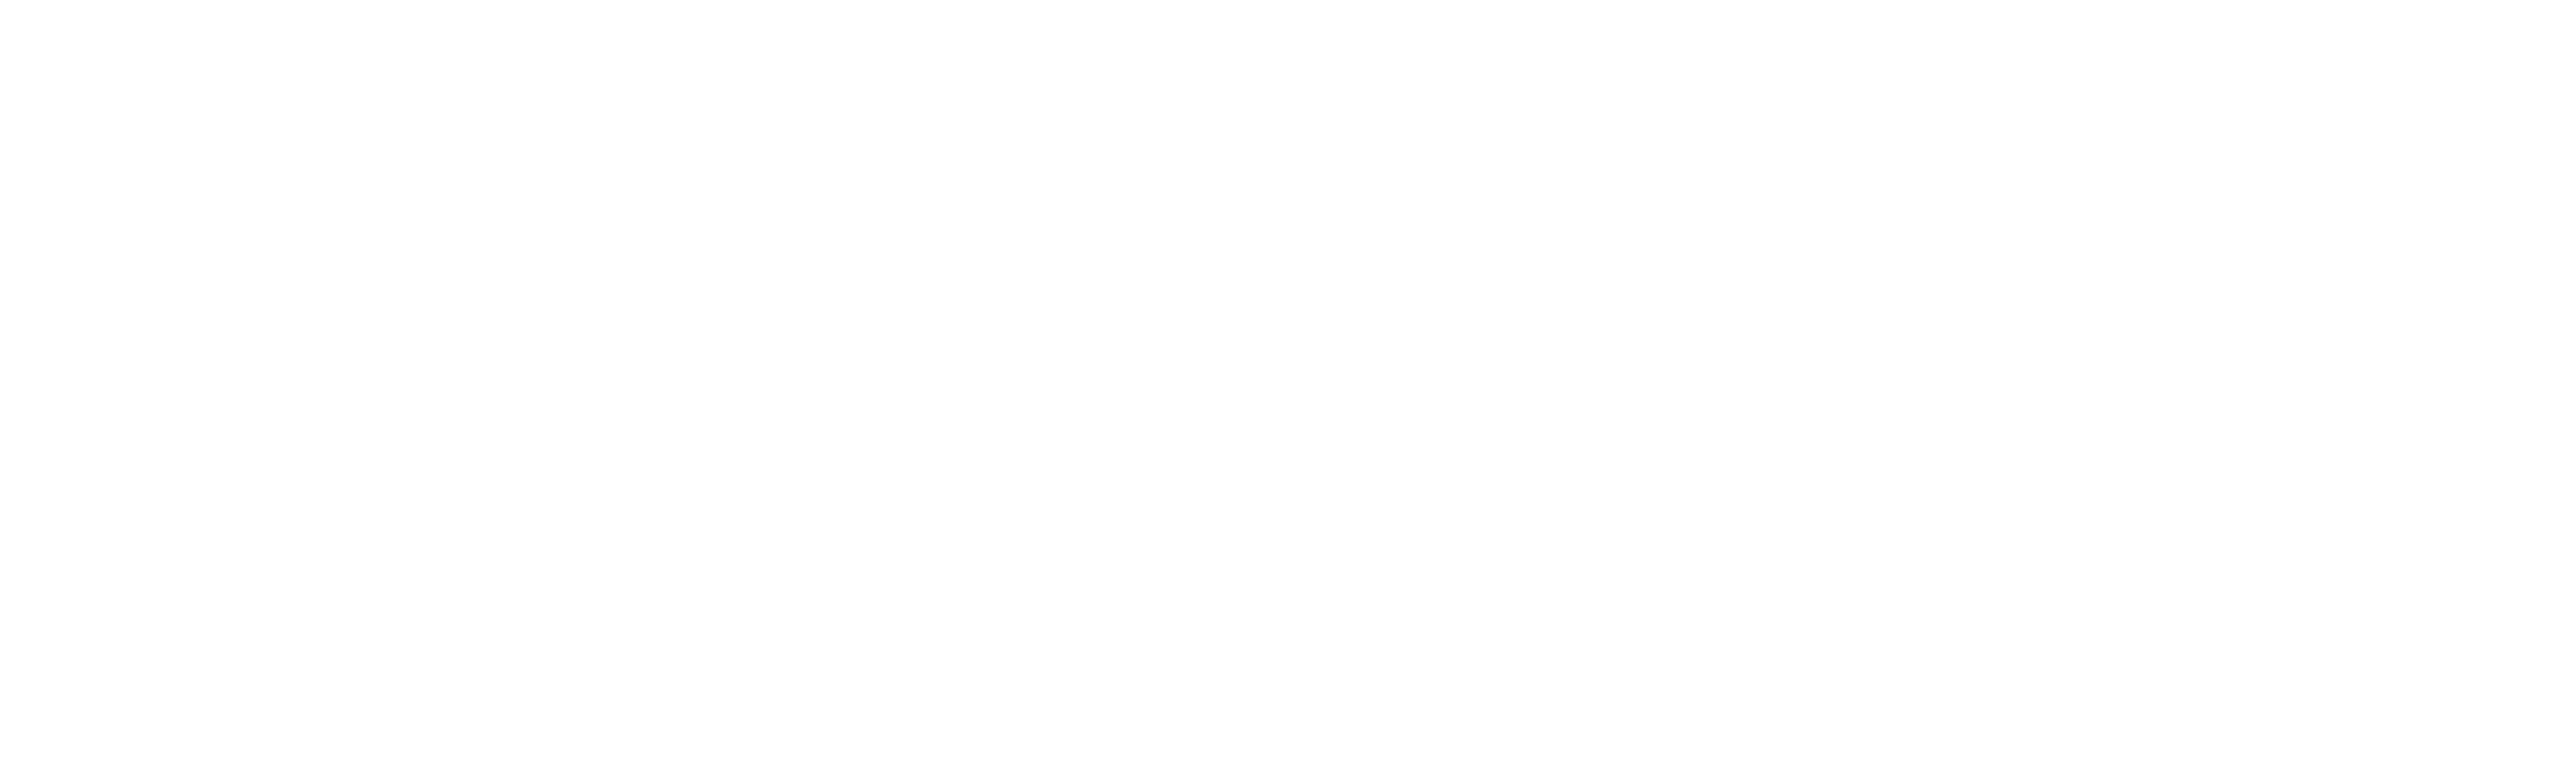 IK Digital